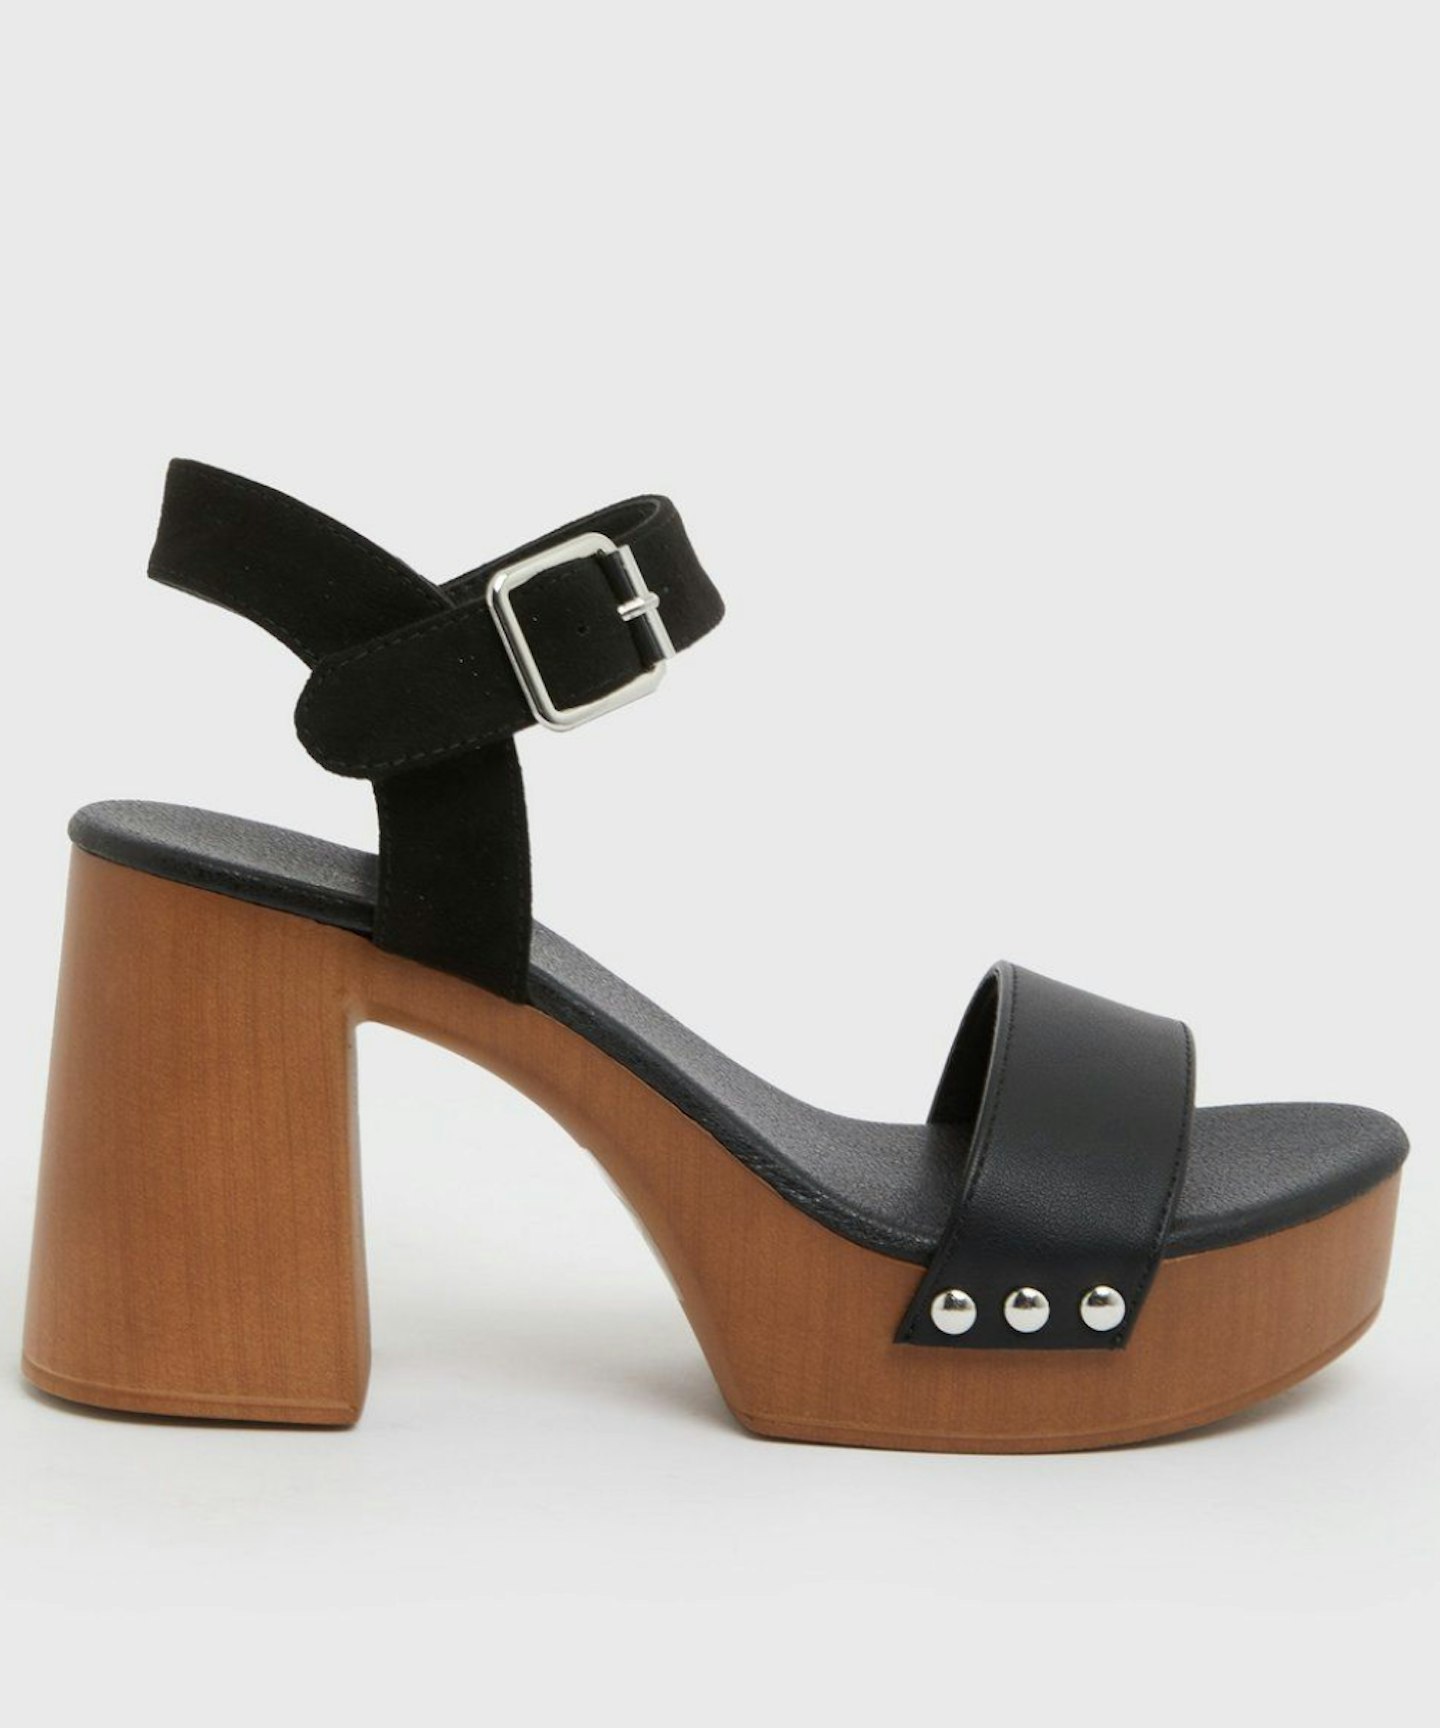 Where To Buy The 'Comfiest' Heels That Zara McDermott Loves | Shopping ...